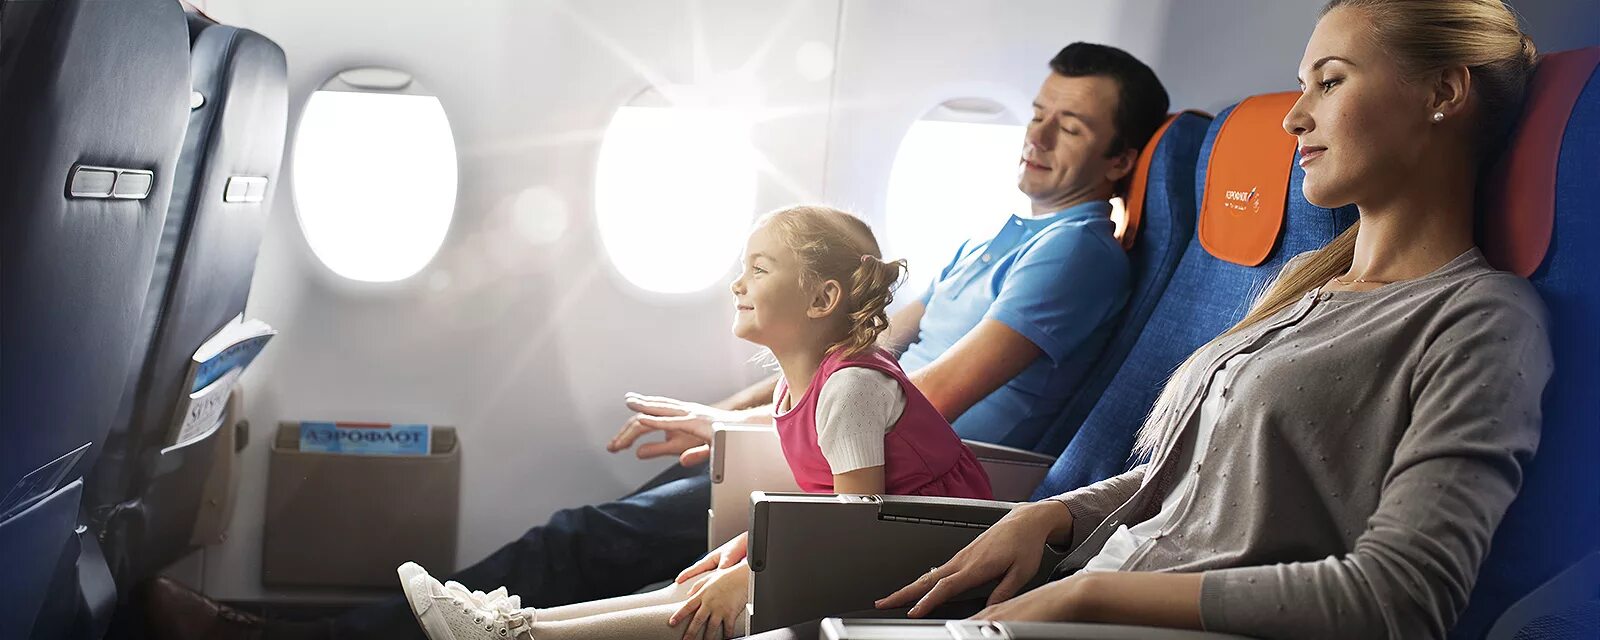 Путешествие на самолете. Самолет для детей. Семья в самолете. Путешествие с семьей на самолете. Ребенок без сопровождения в самолете